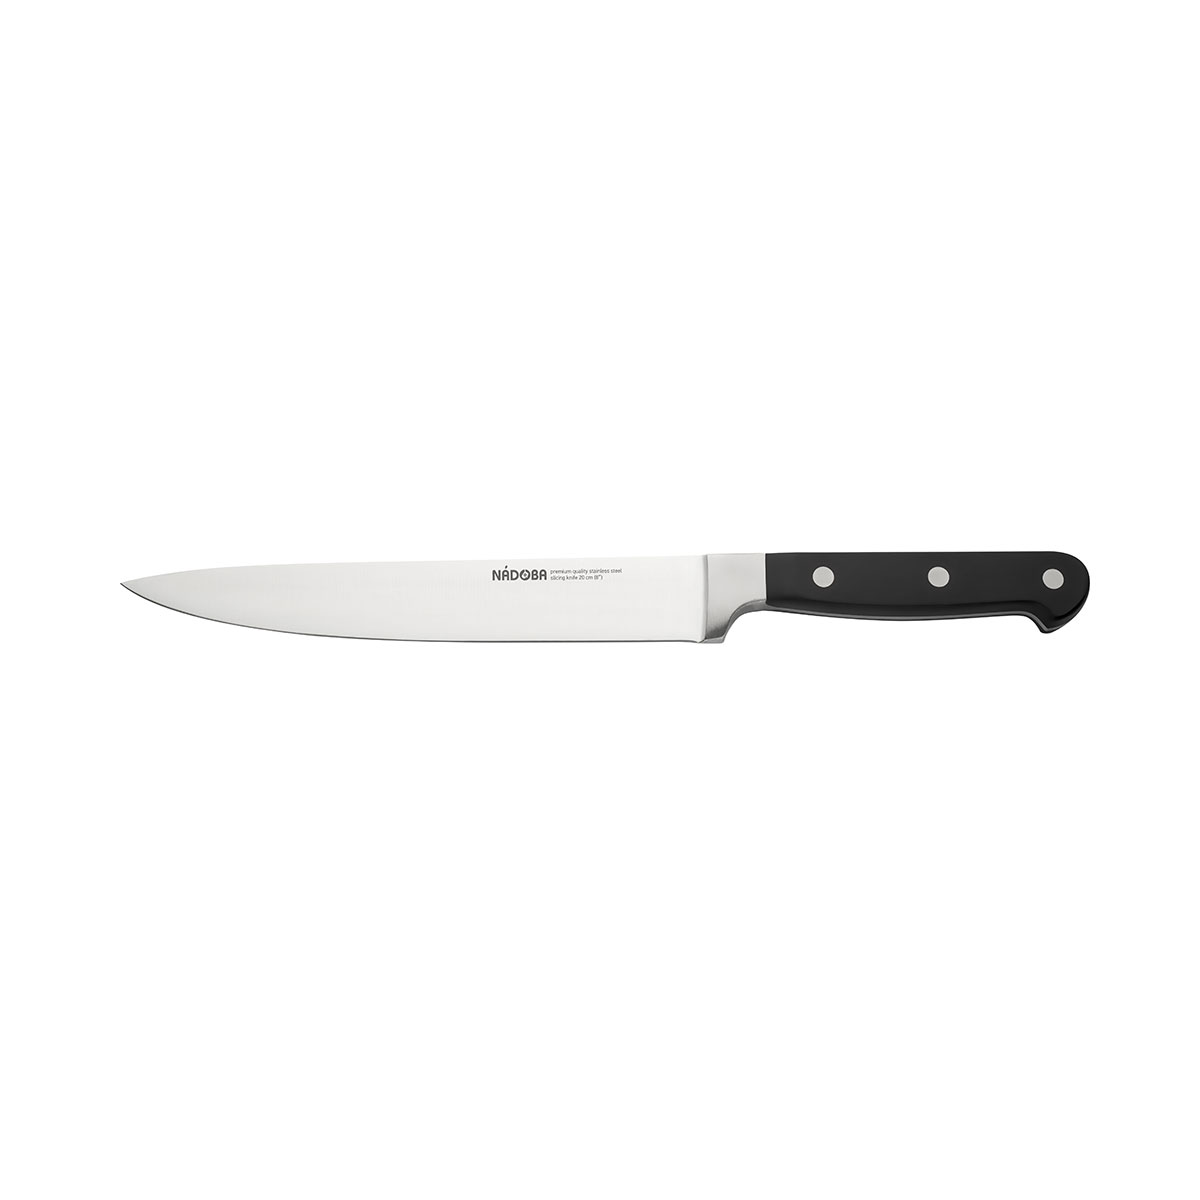 Нож Nadoba разделочный 724212, 20 см нож разделочный 20 см nadoba ursa